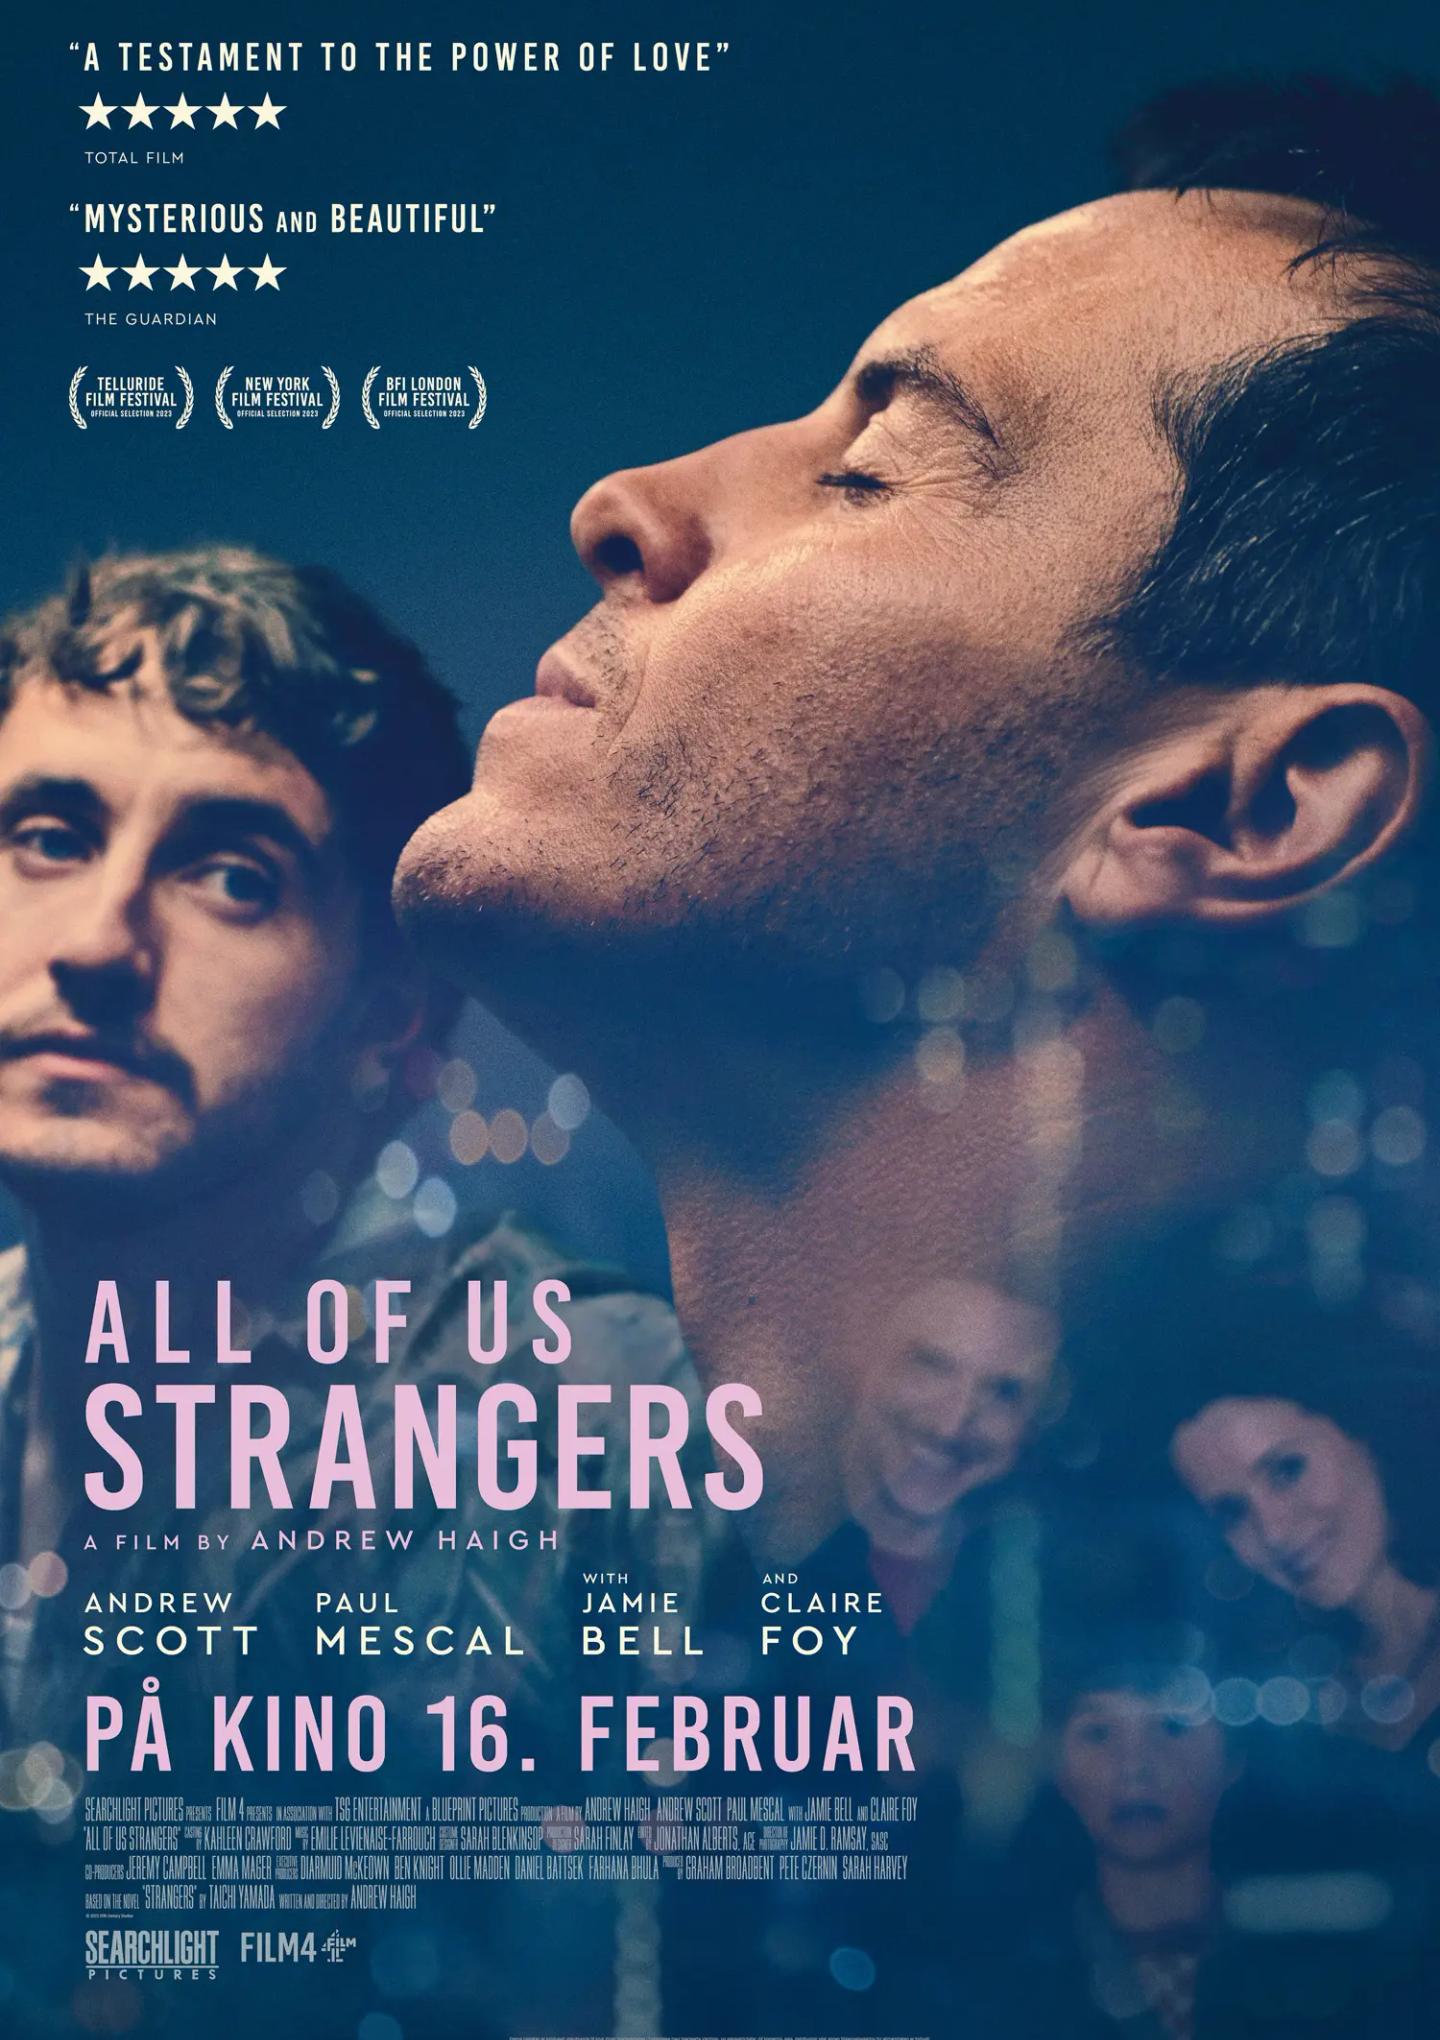 Plakat for 'All of us Strangers'